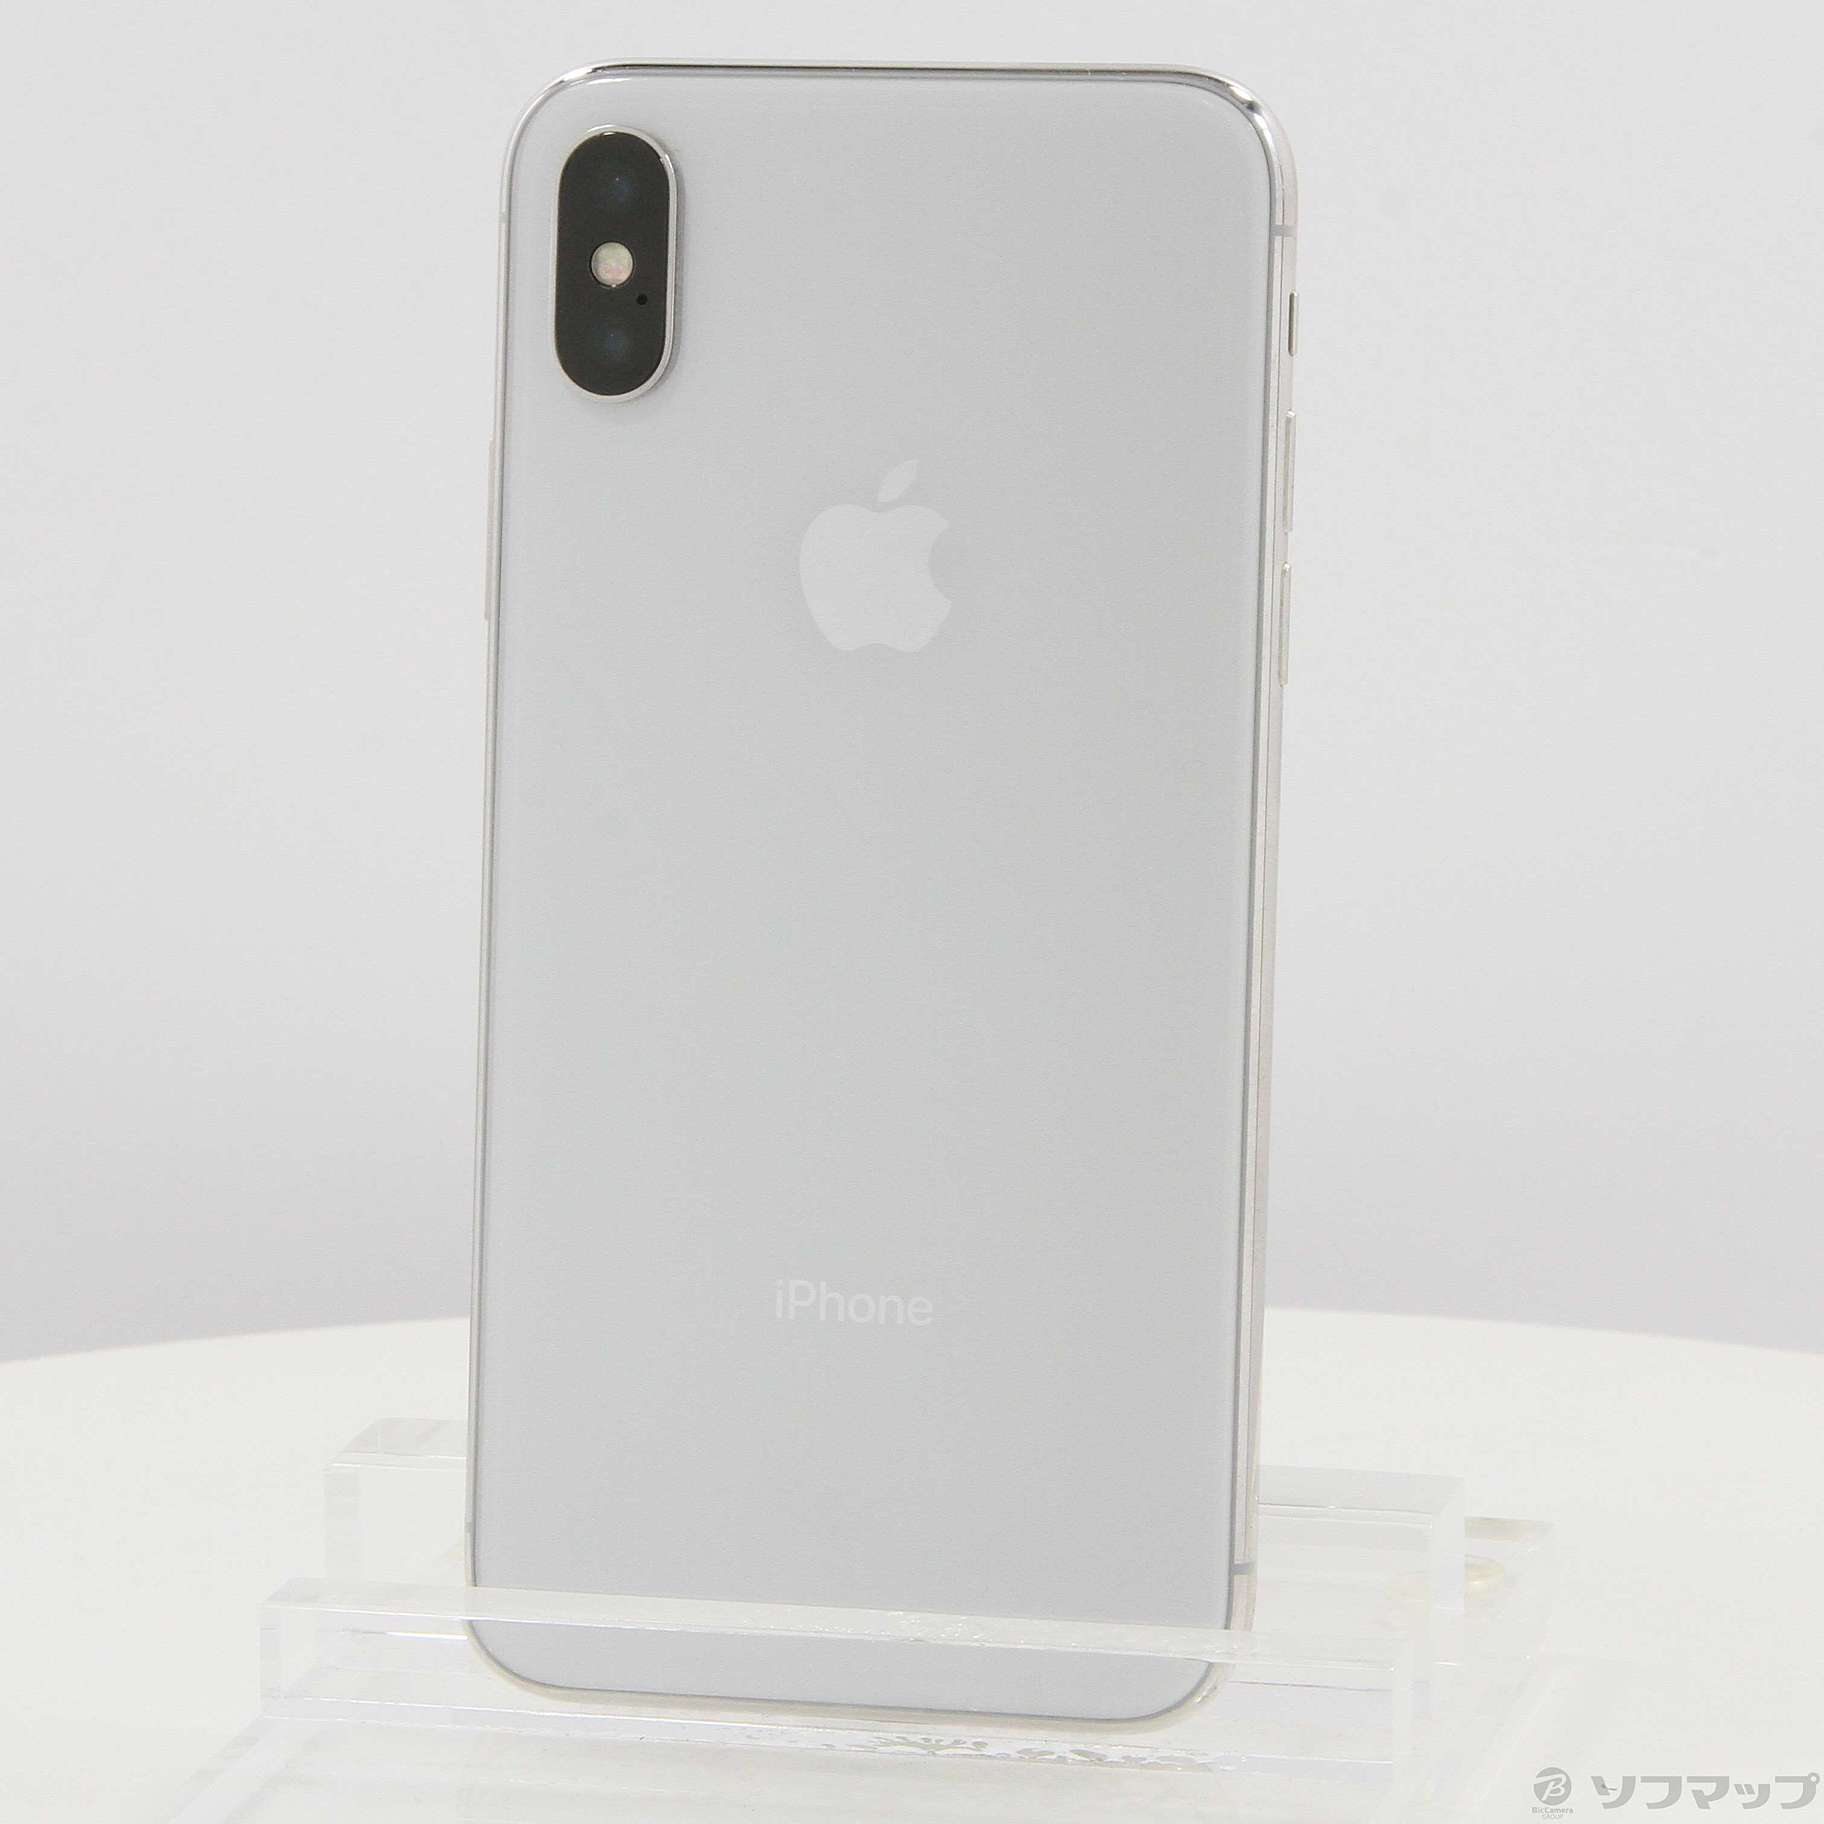 iPhoneX 64GB  Silver